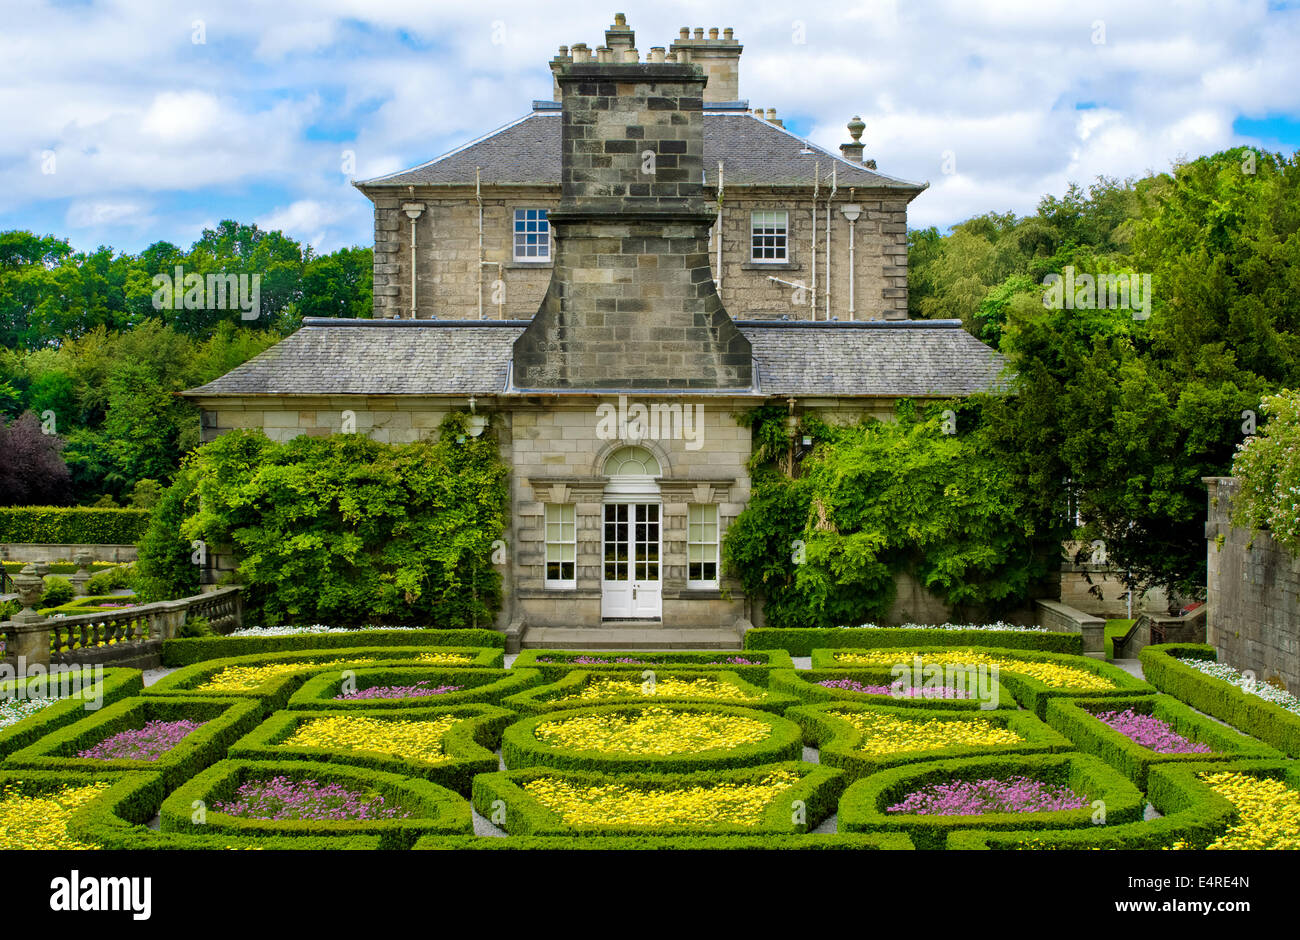 Formal garden at Pollok house in Pollok Country Park, Glasgow, Scotland, UK Stock Photo